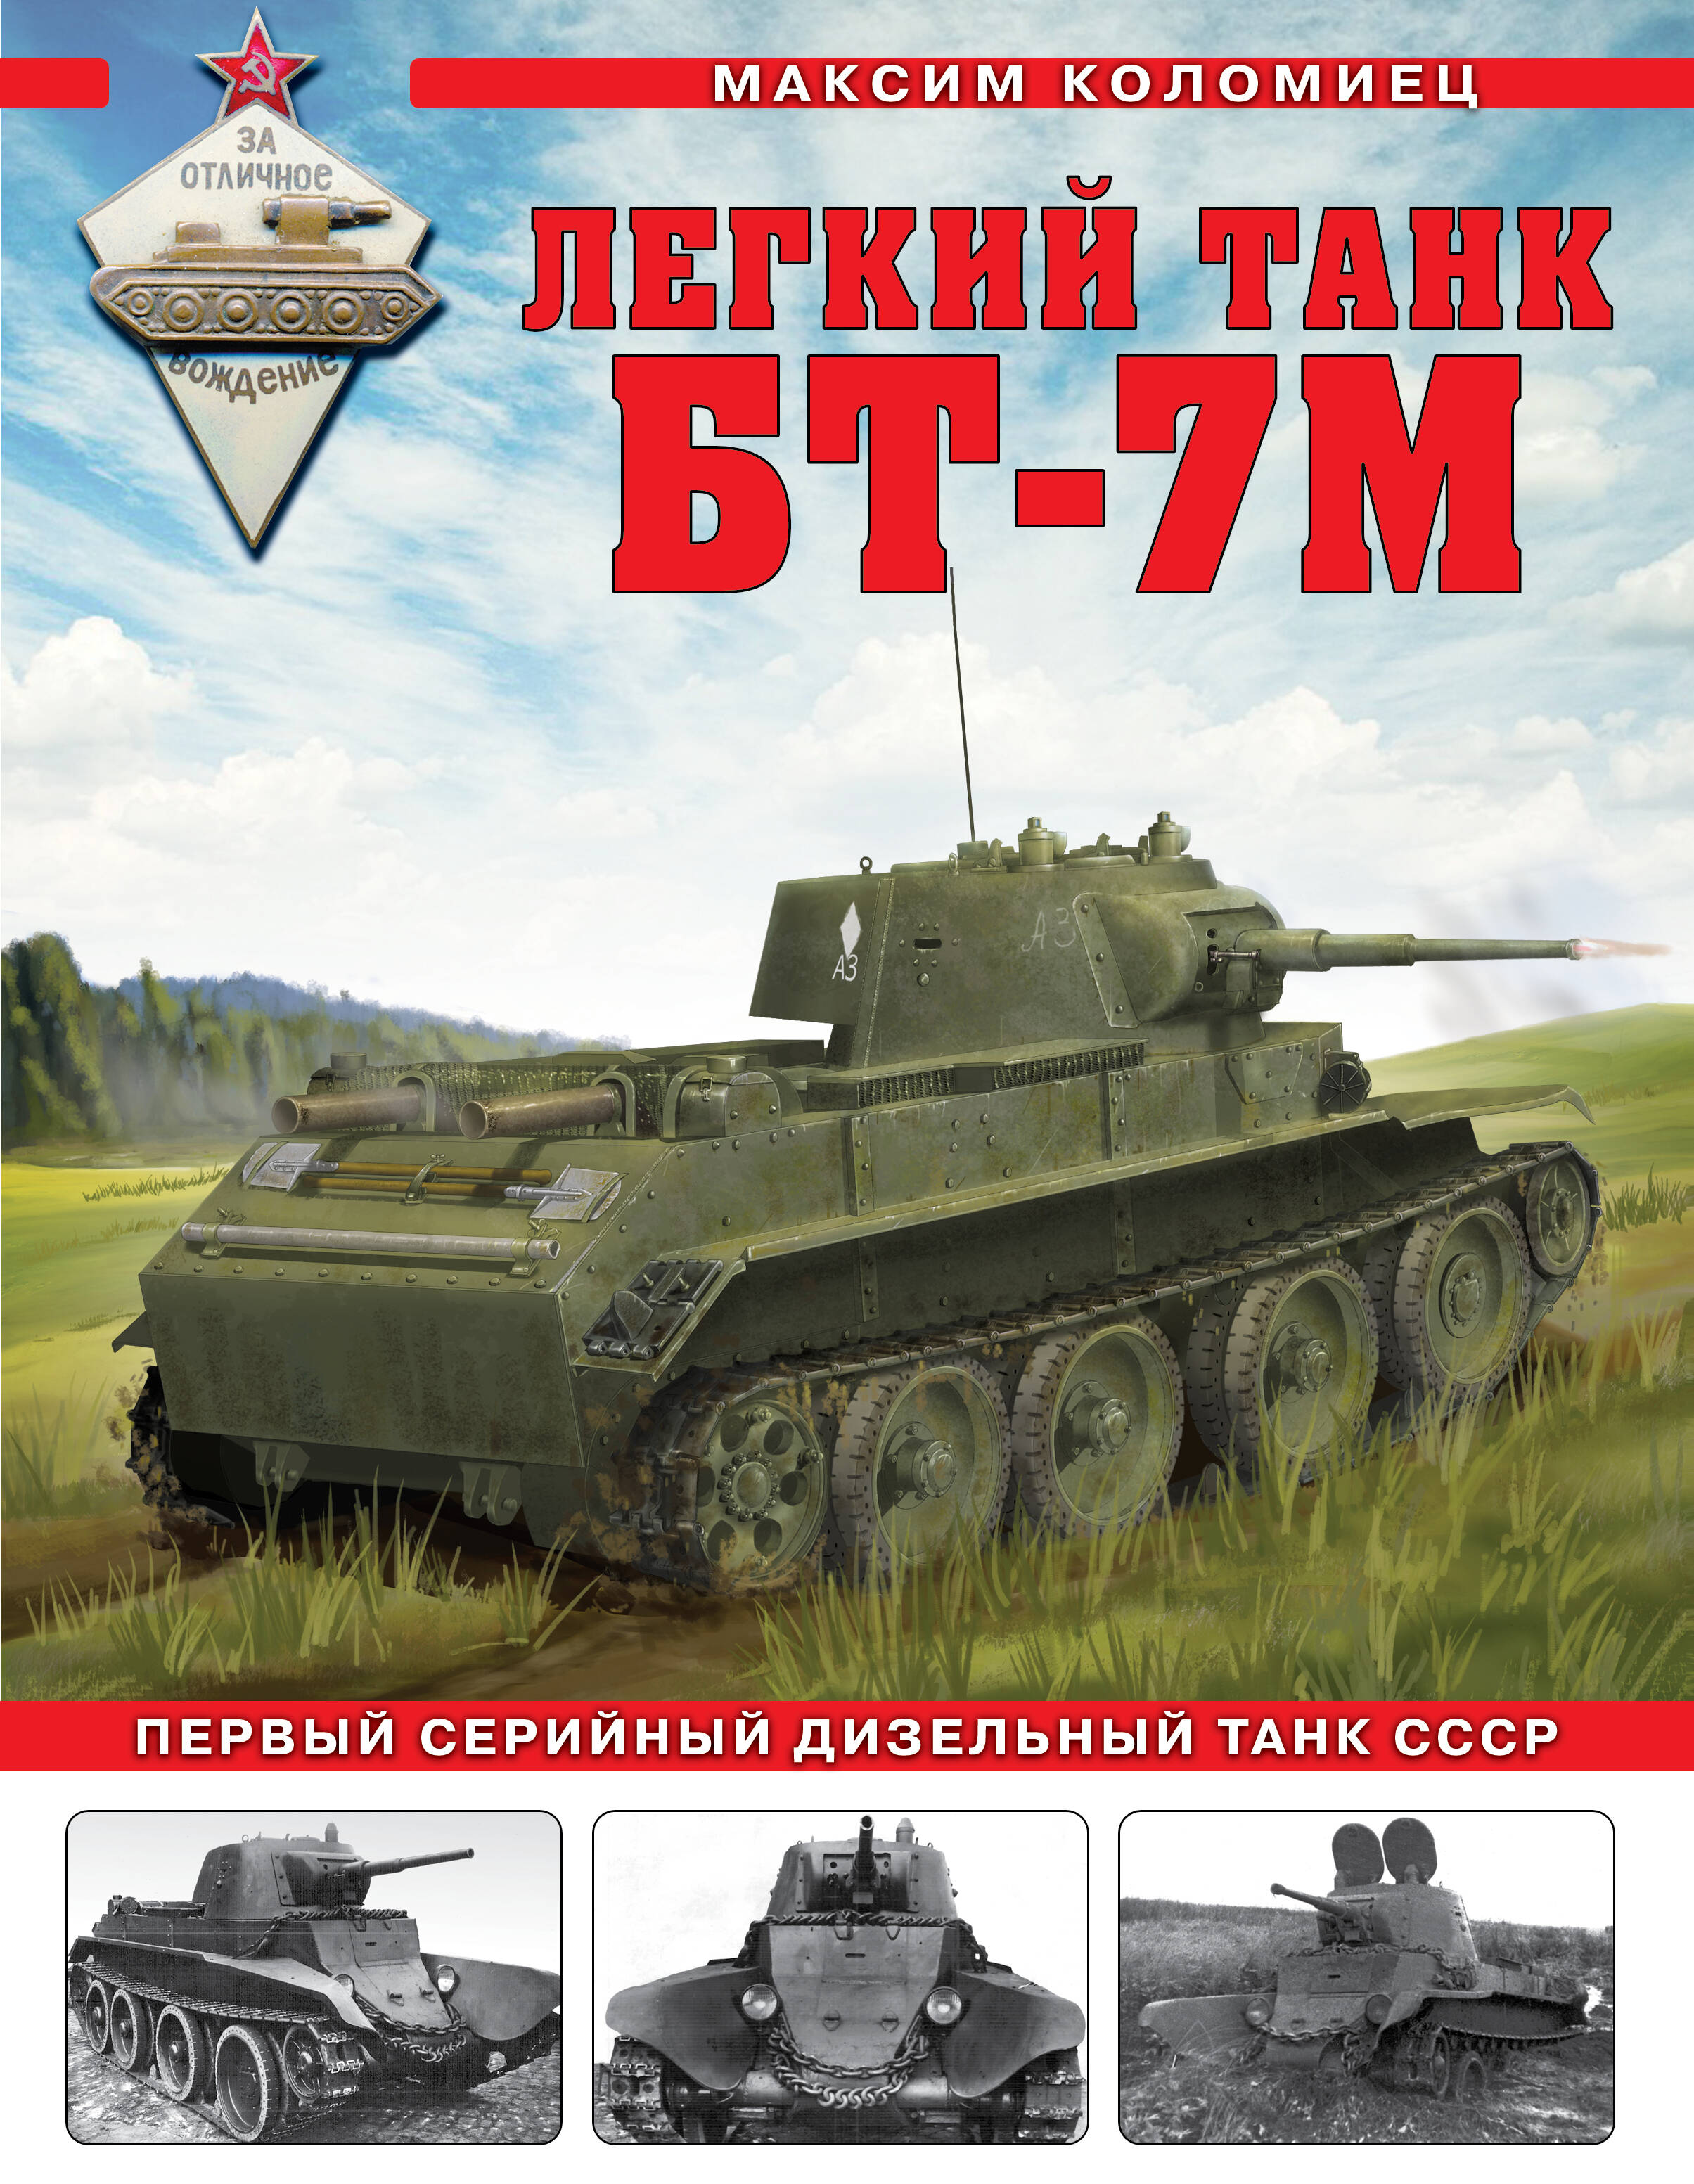 Коломиец Максим Викторович - Легкий танк БТ-7М: первый серийный дизельный танк СССР